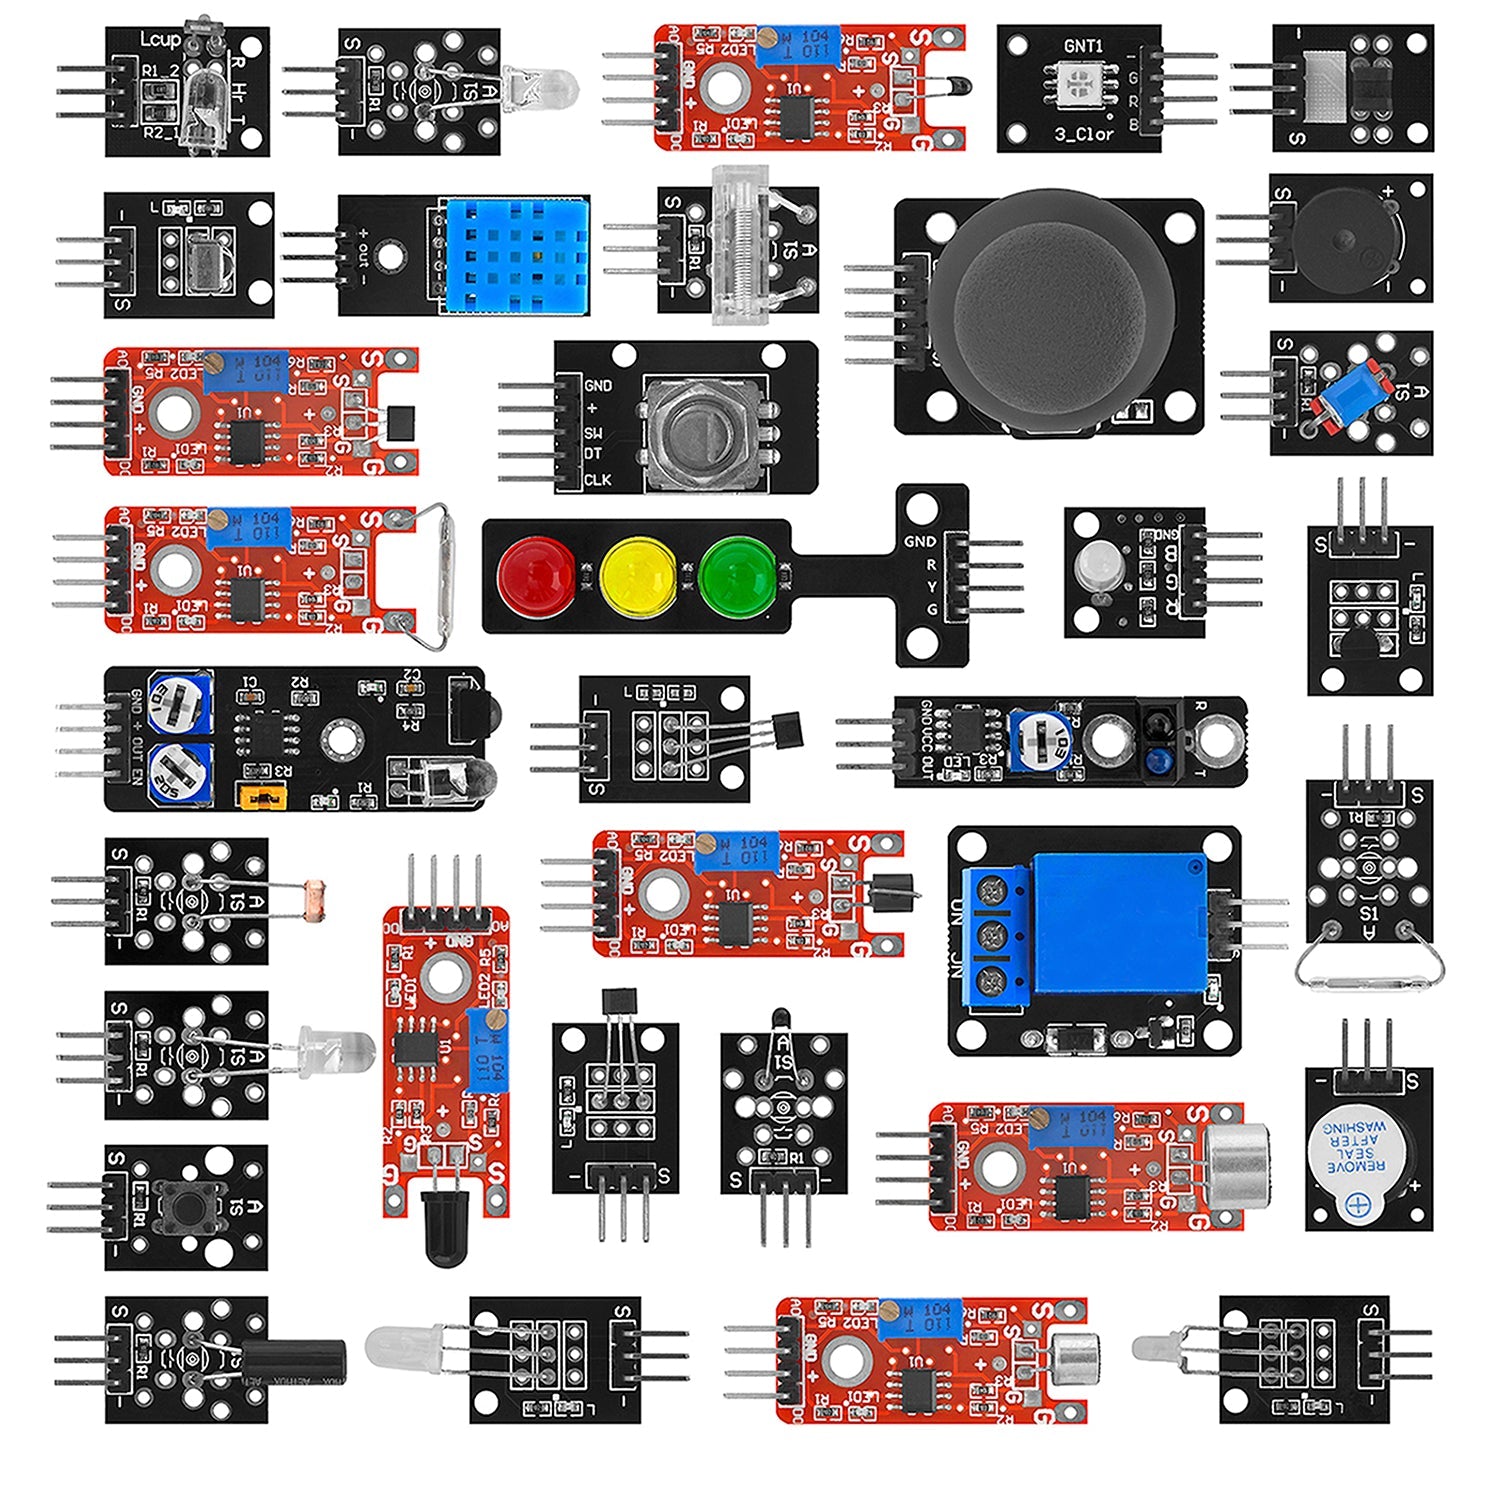 35 in 1 Sensor Kit Module Kit en Accessoire Kit compatibel met Arduino en Raspberry Pi